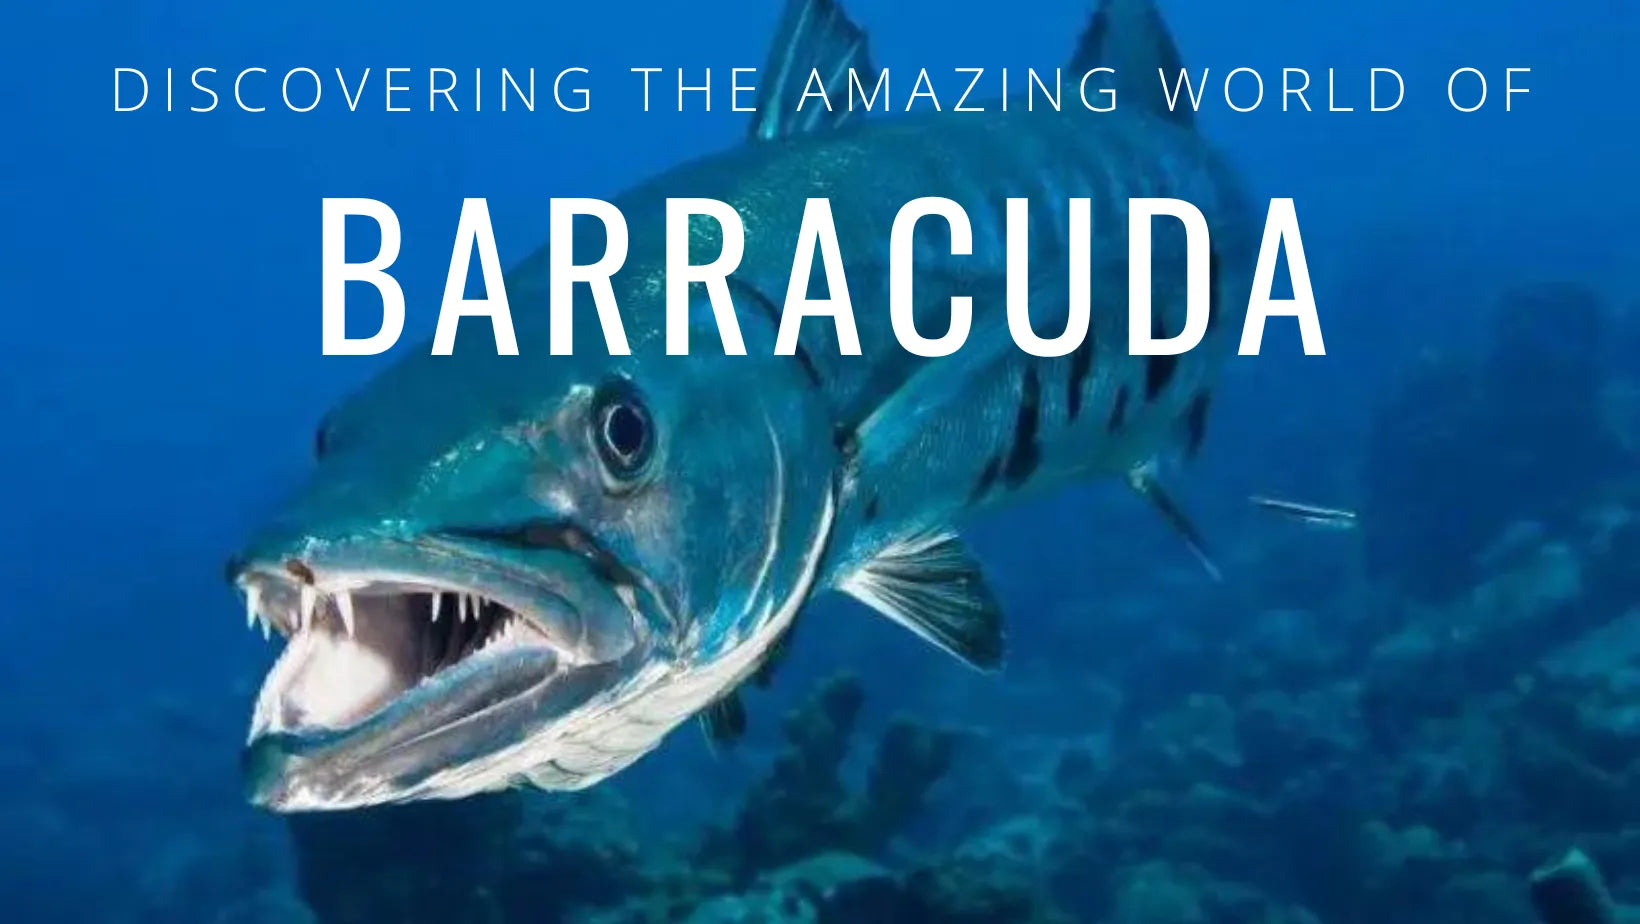 Todo lo que necesitas saber sobre las barracudas: características, hábitat y curiosidades